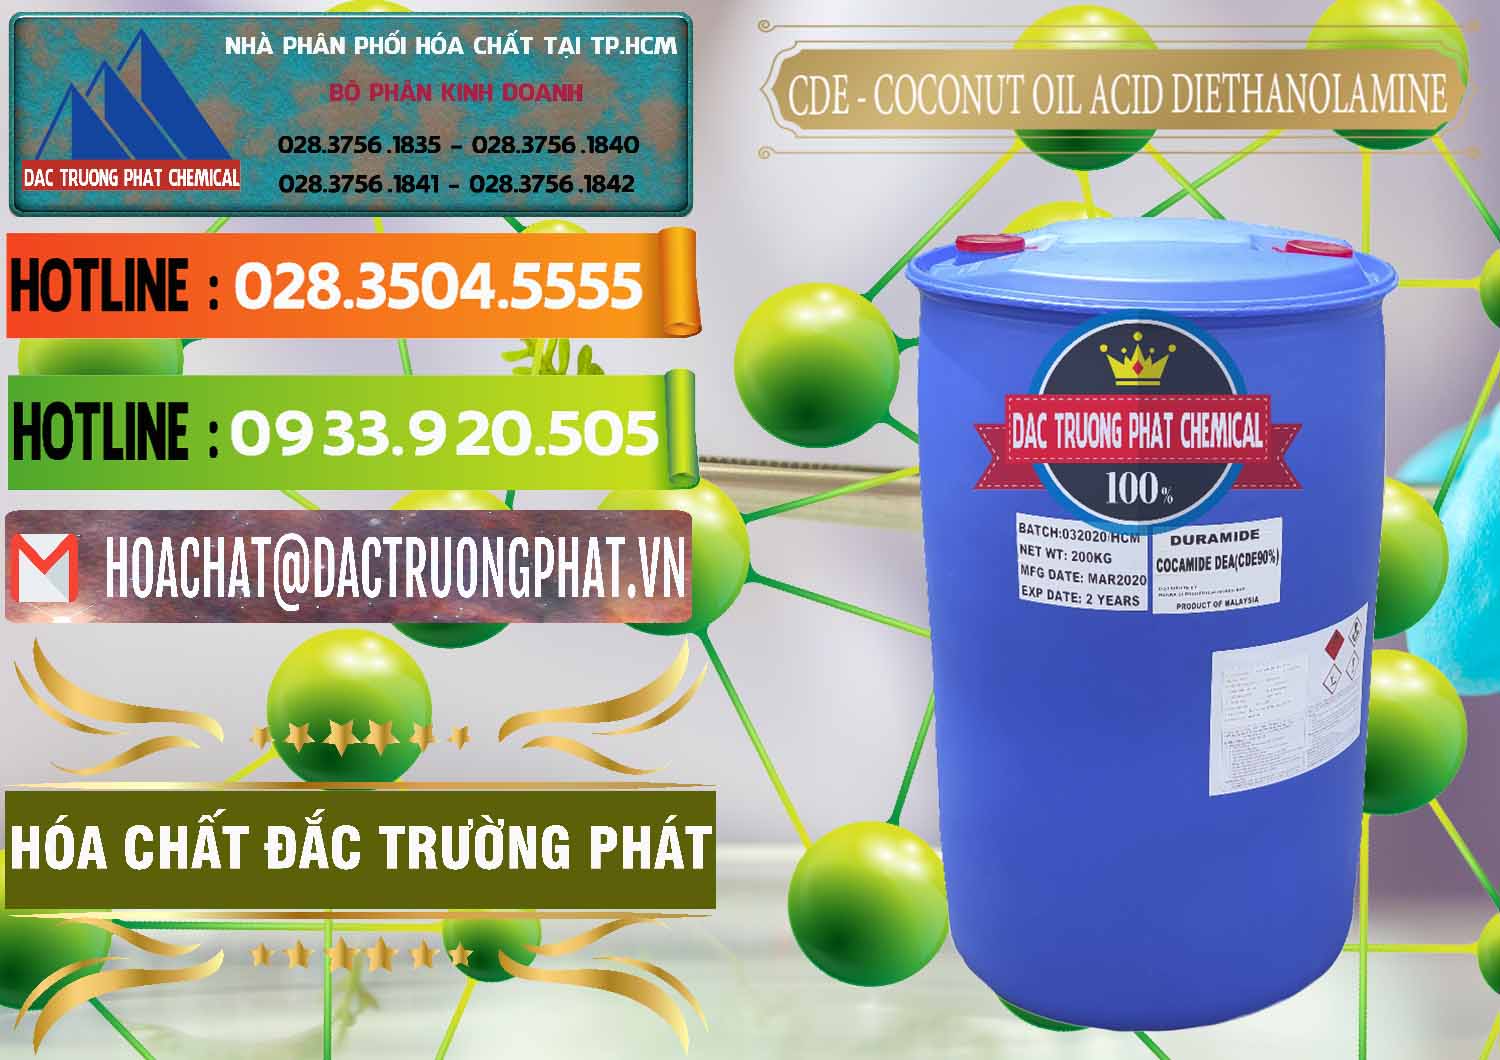 Cty cung ứng _ bán CDE - Coconut Oil Acid Diethanolamine Mã Lai Malaysia - 0311 - Công ty chuyên cung cấp & nhập khẩu hóa chất tại TP.HCM - cungcaphoachat.com.vn